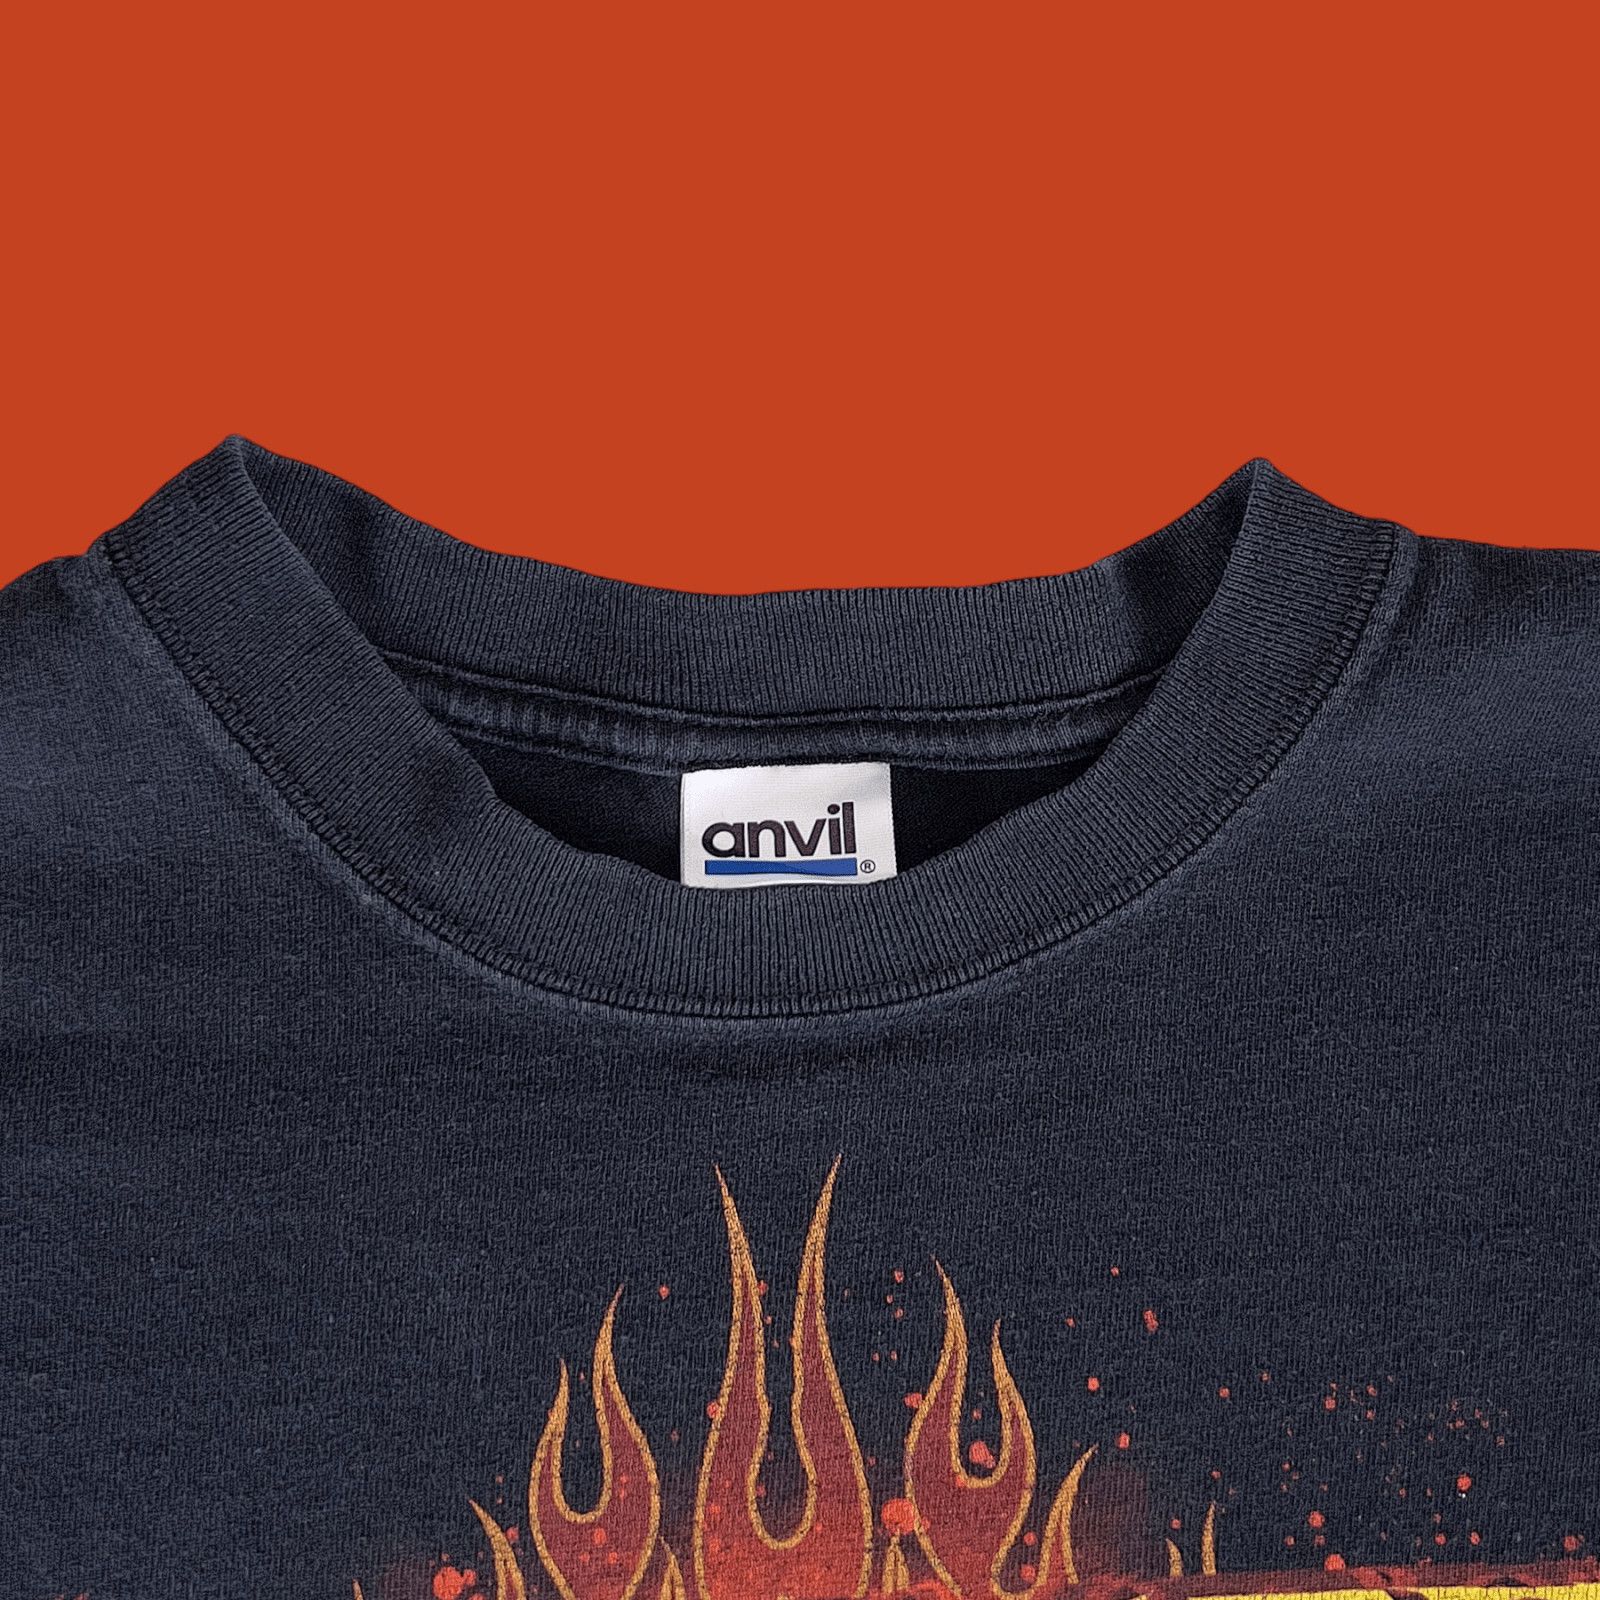 Anvil Y2K Godsmack IV Album T-shirt Hard Rock 21.5" x 27" Size M Size US M / EU 48-50 / 2 - 4 Preview